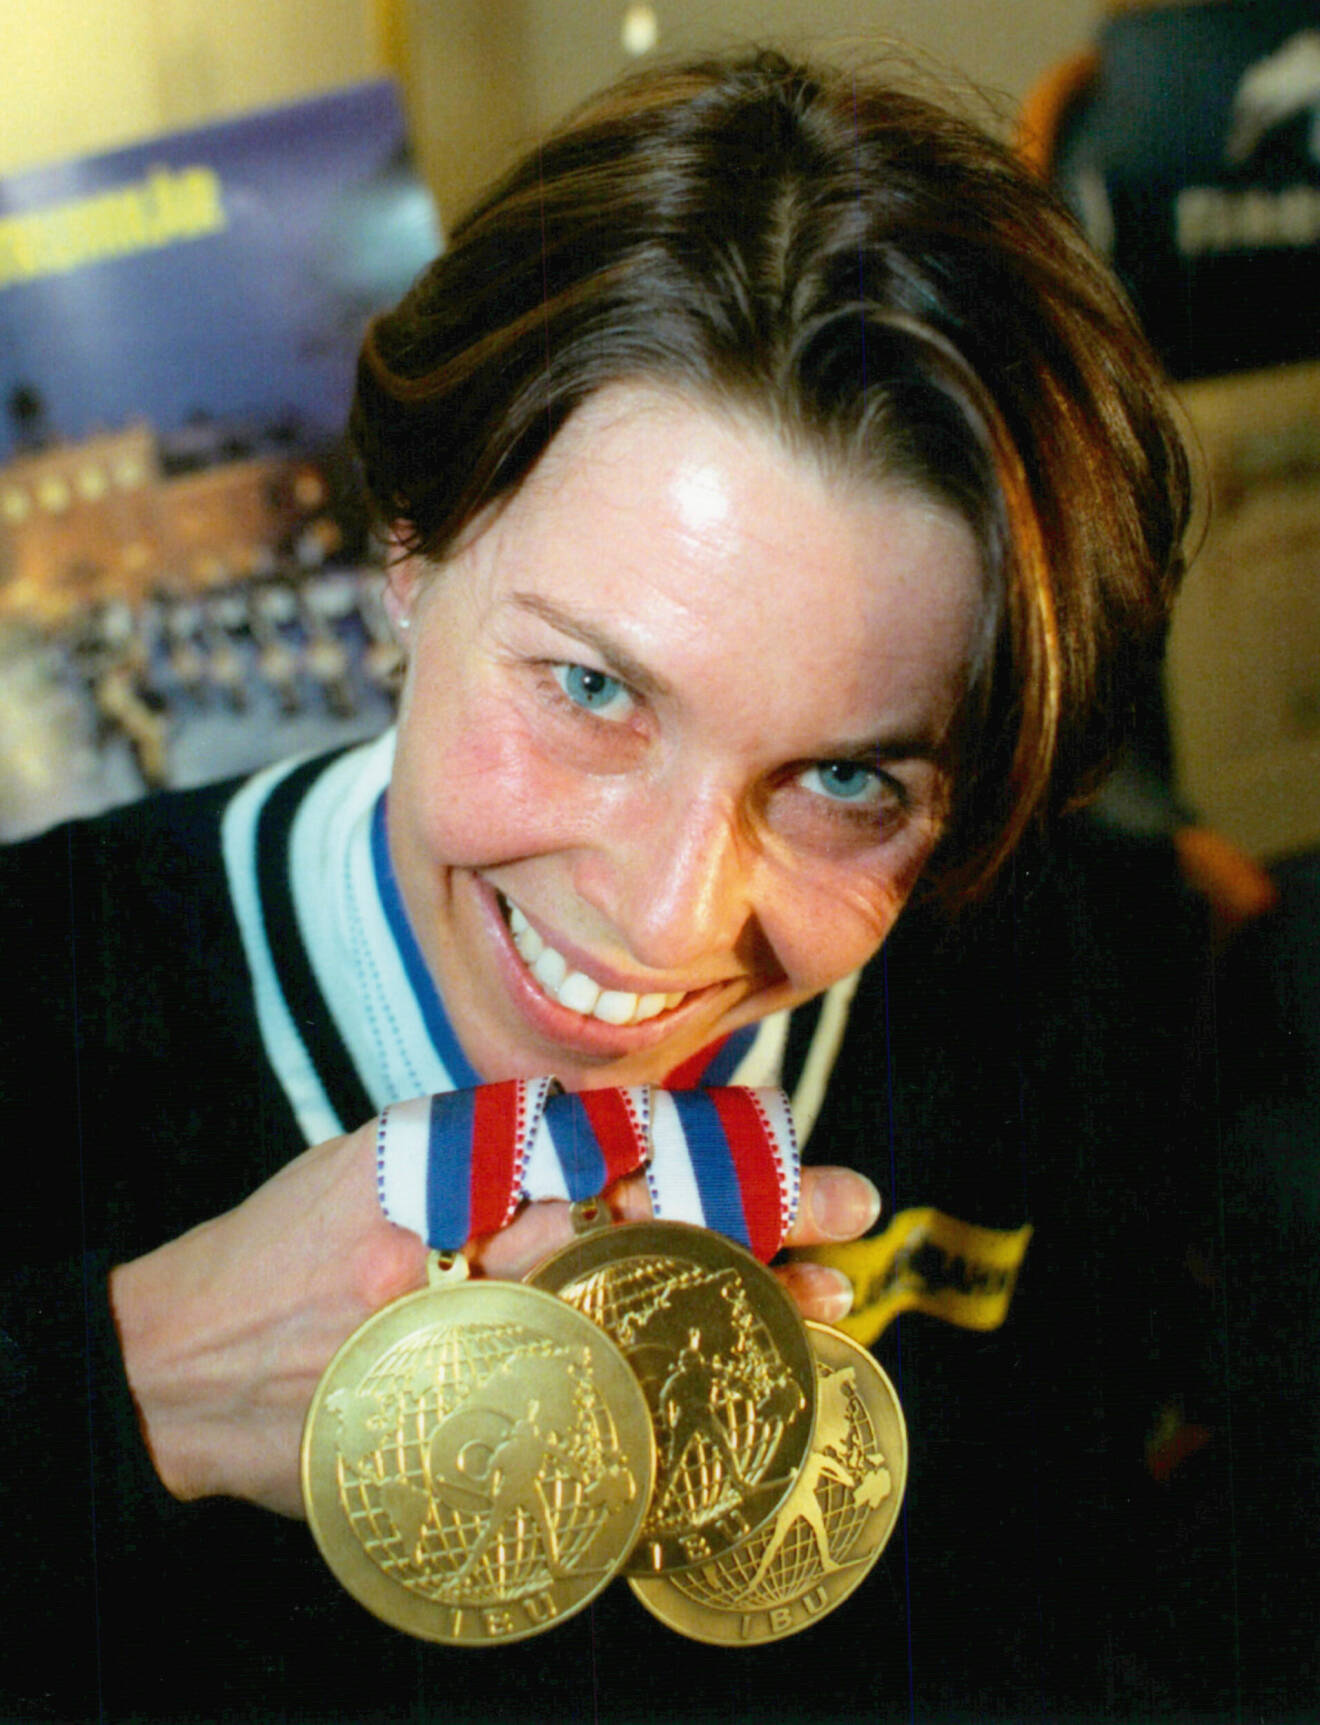 Magdalena Forsberg med sina medaljer från skidskytte-VM år 1997.